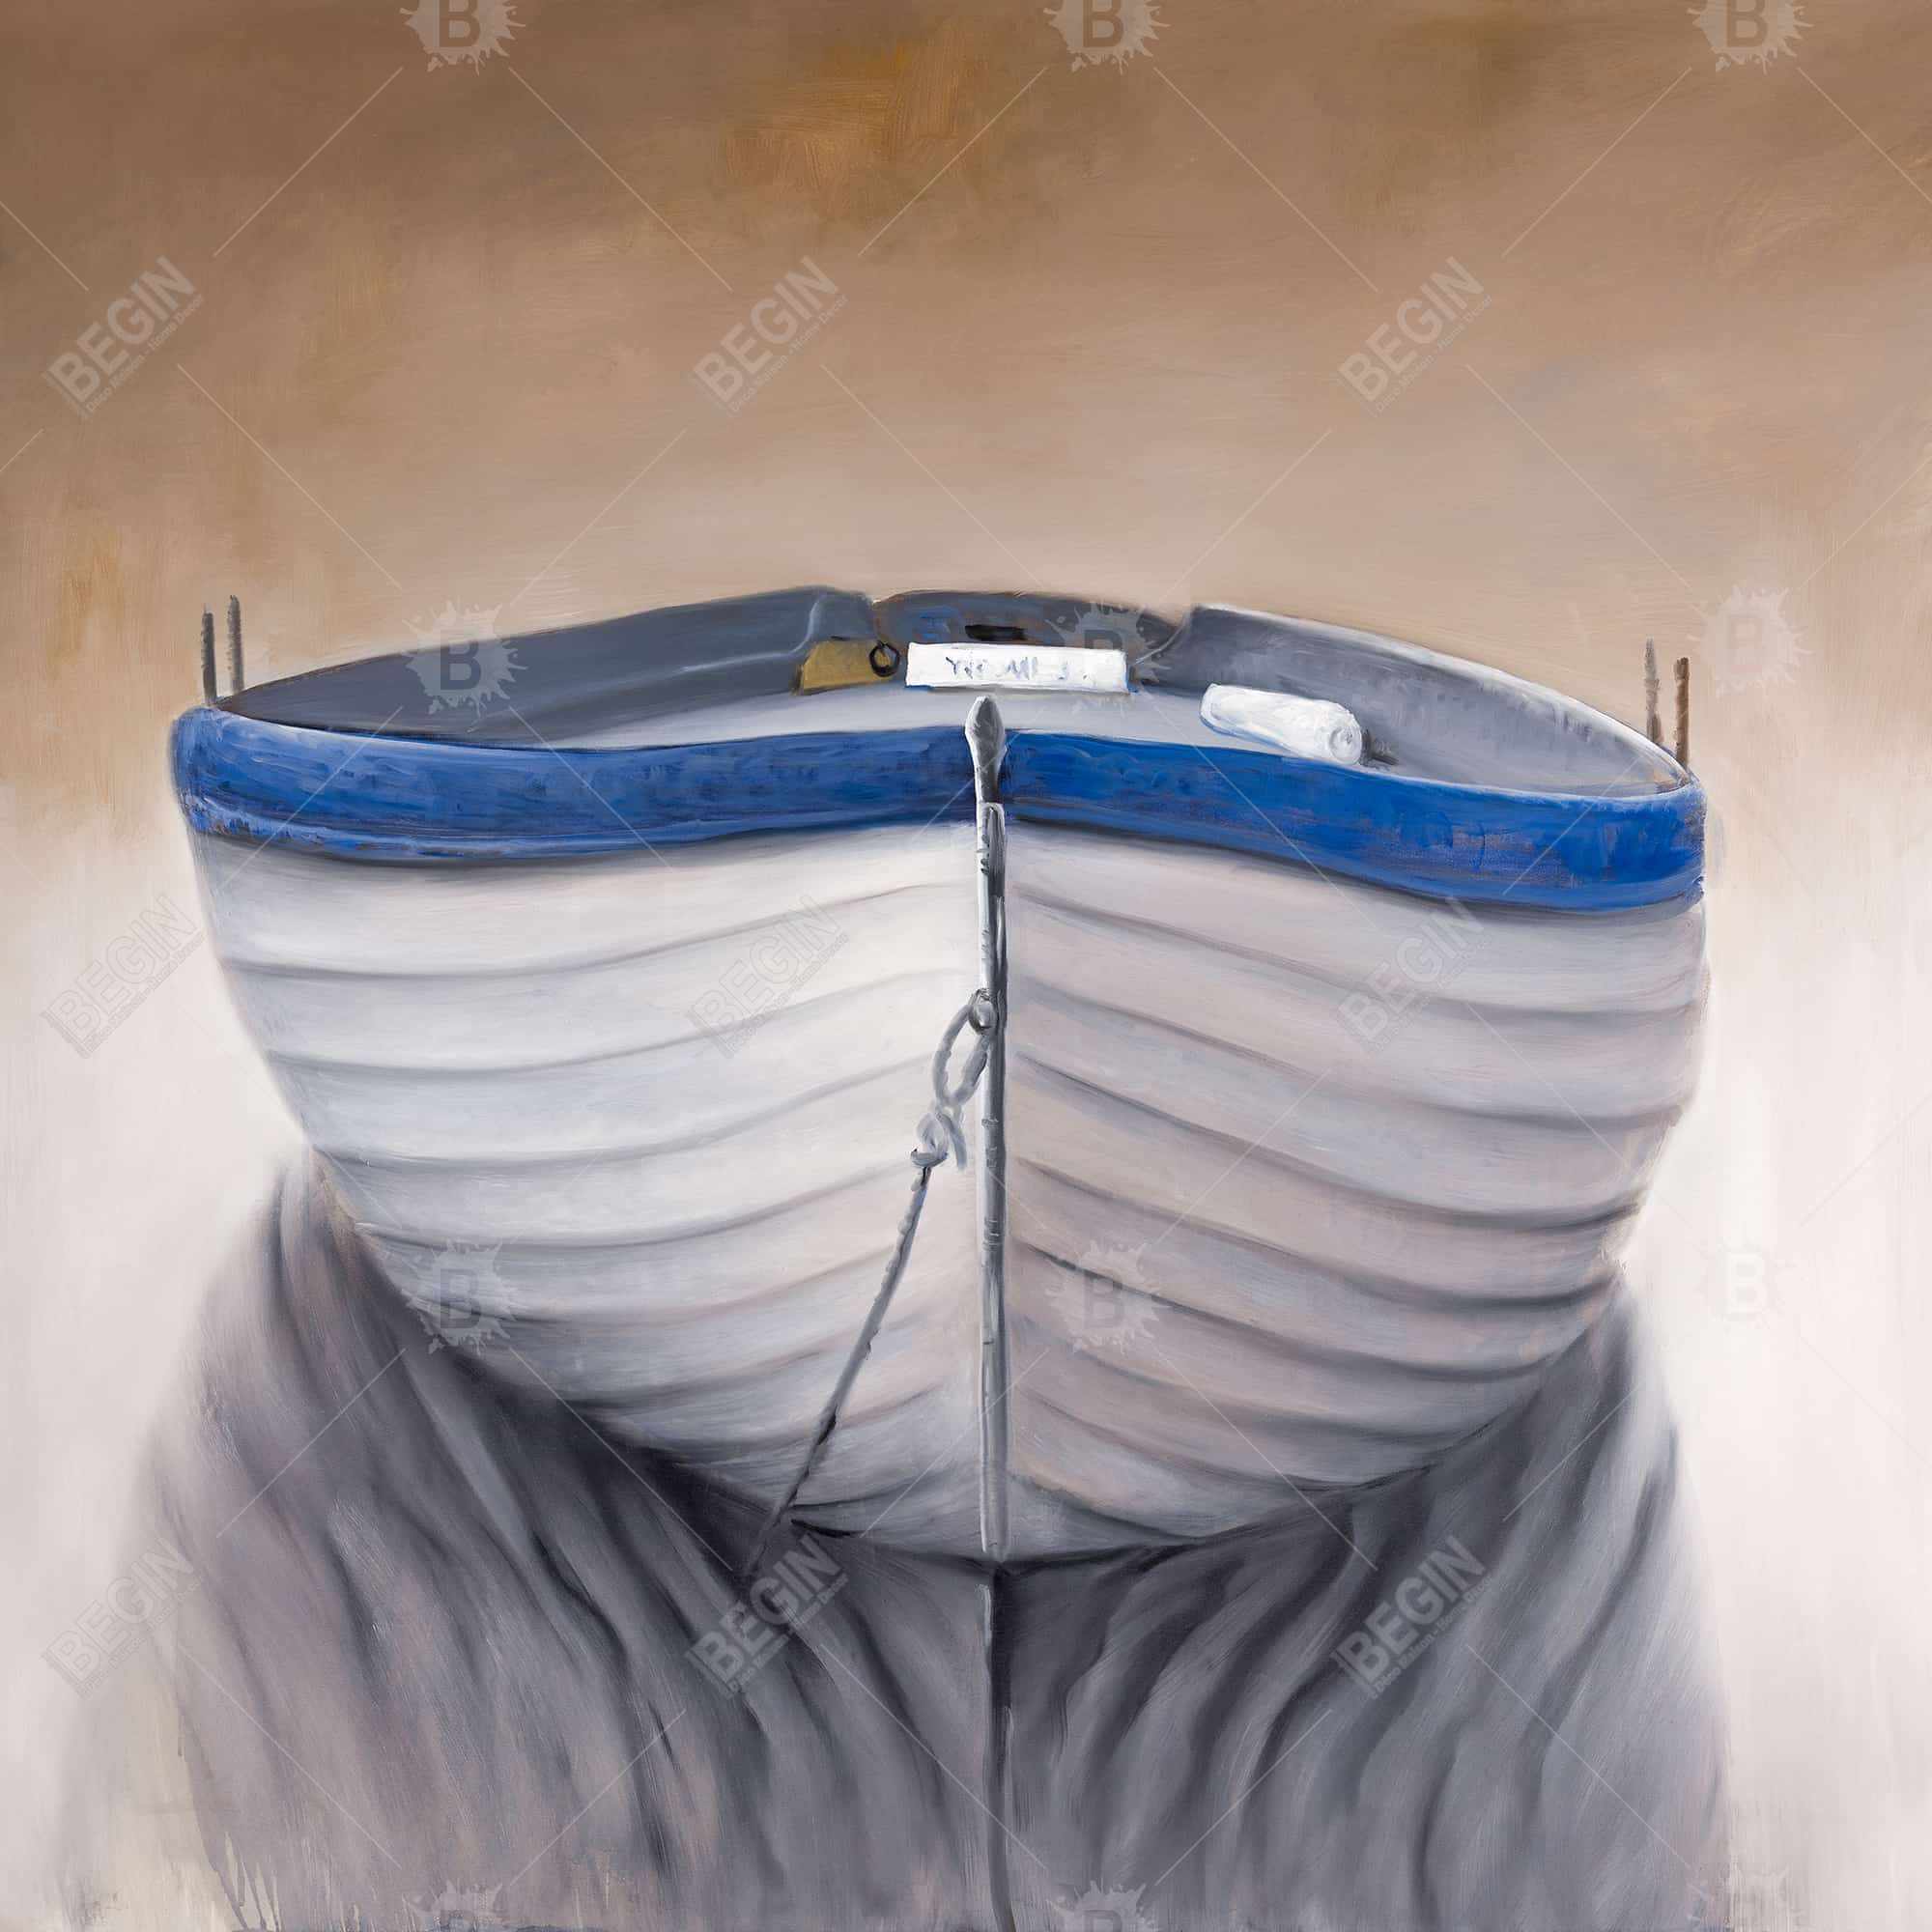 Canoe boat